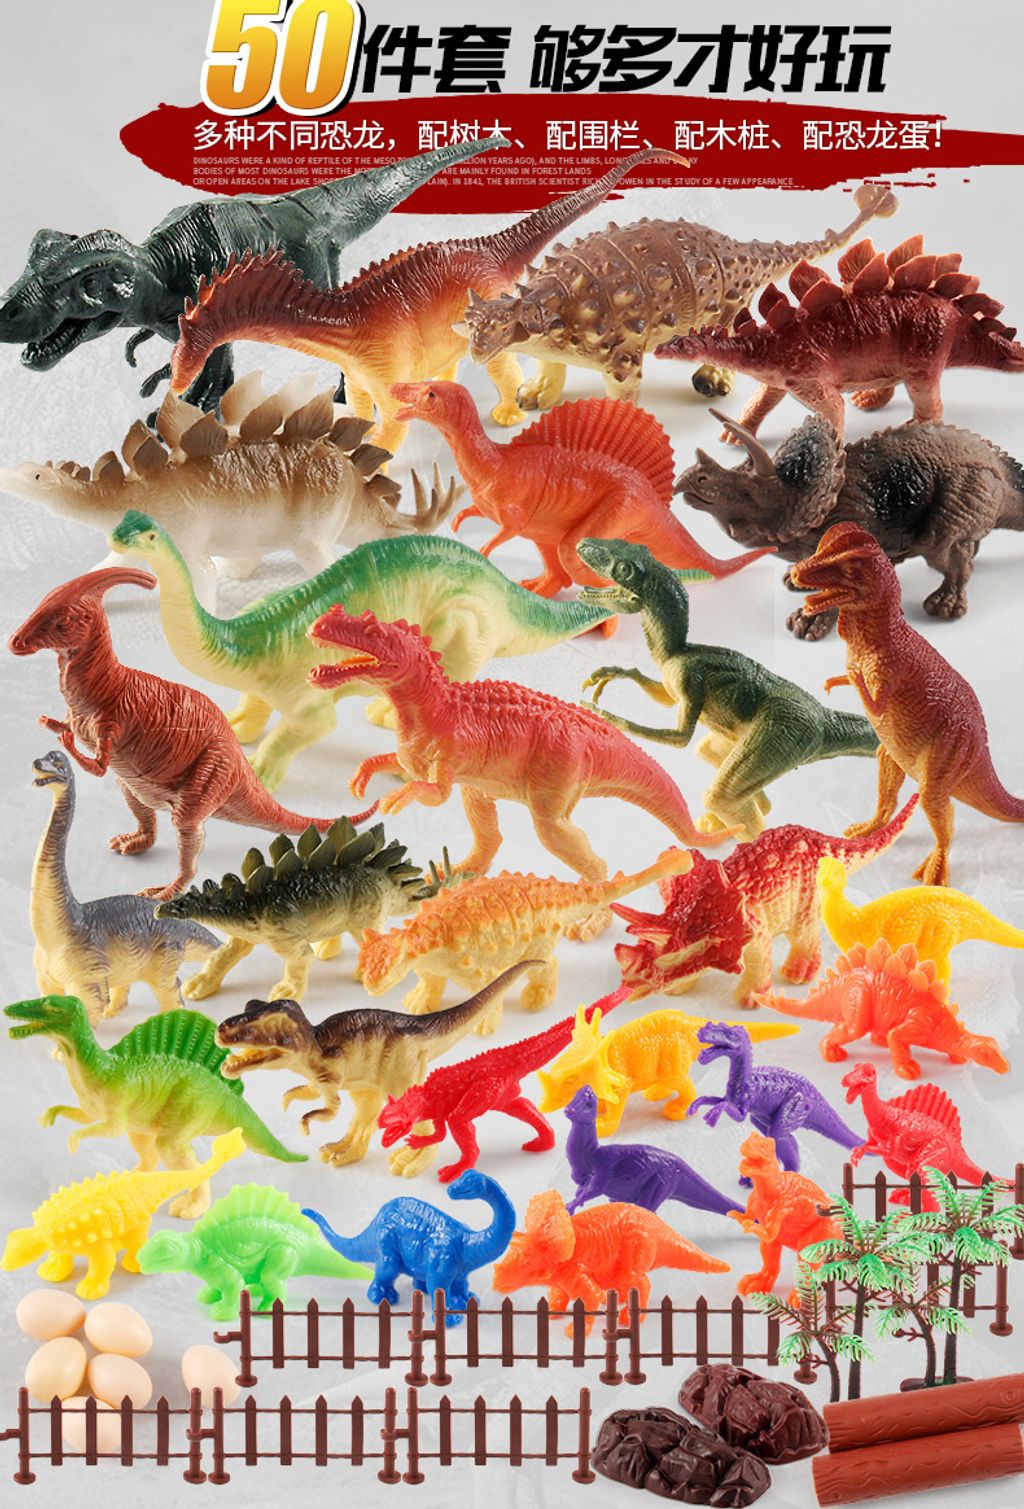 50 pieces dinosaur.jpg